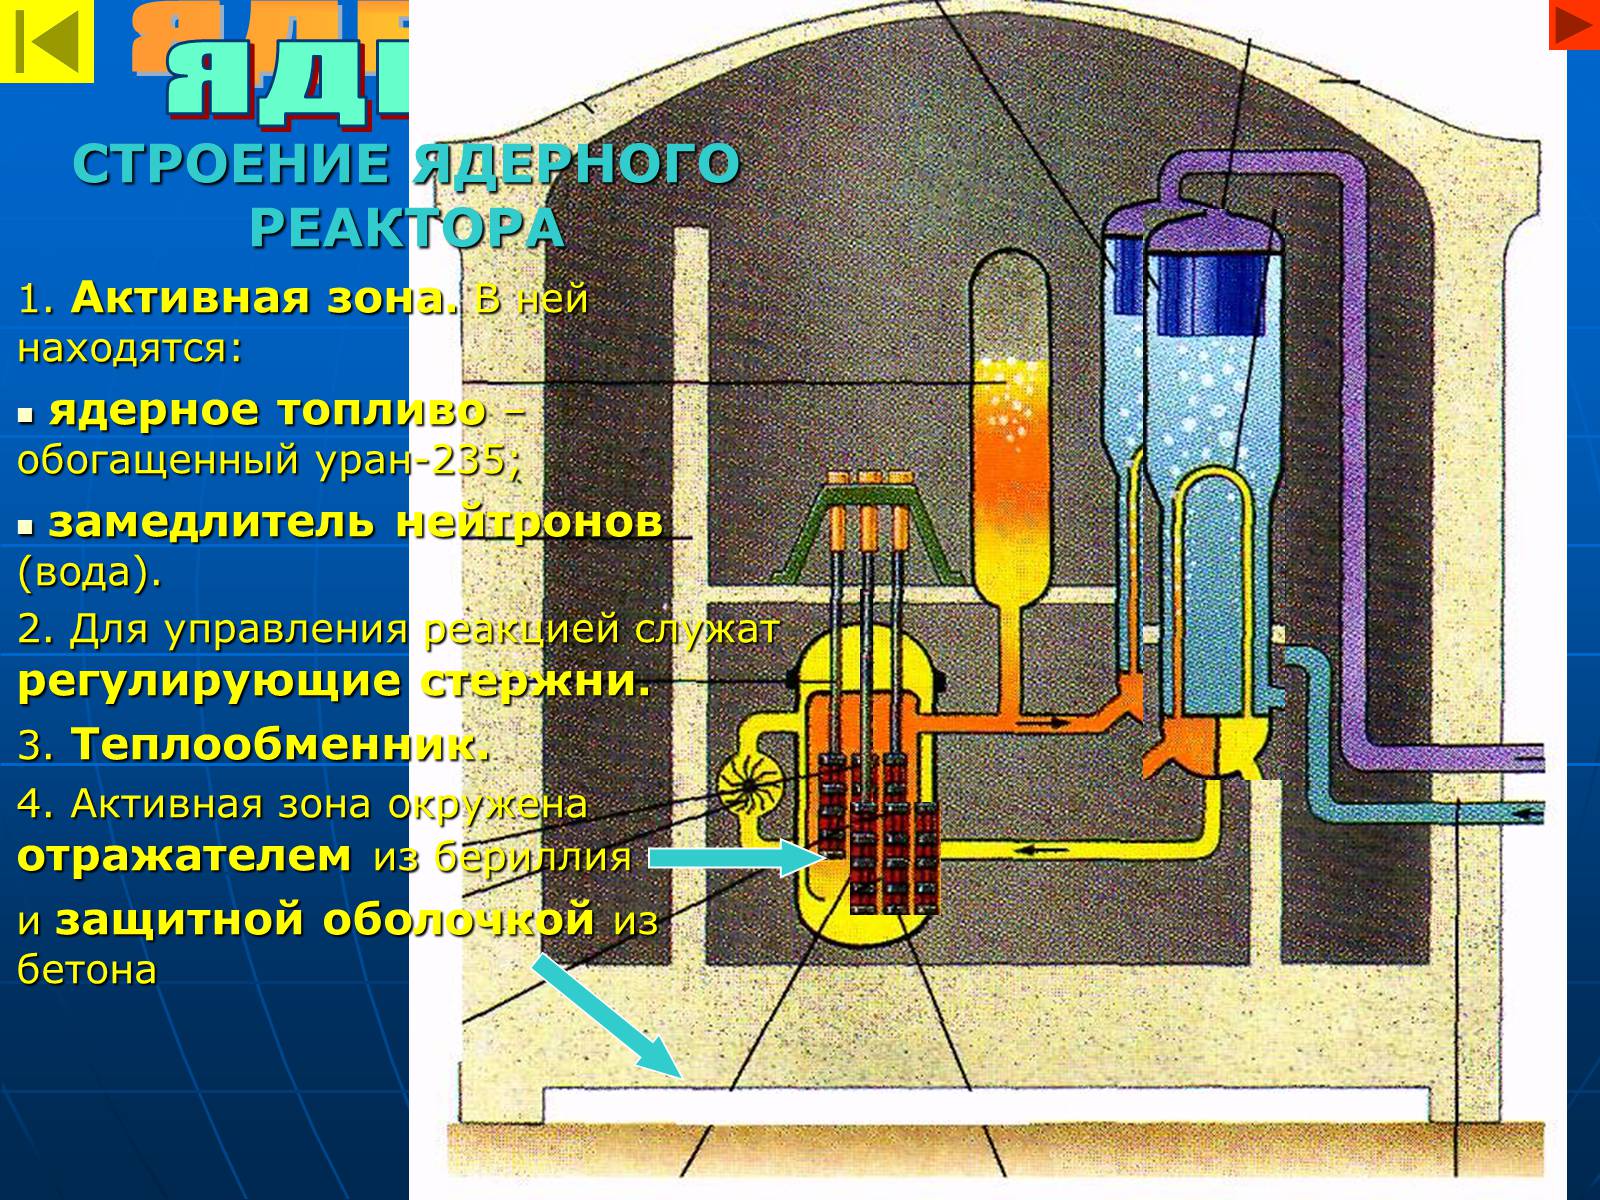 Строение реактора ядерного реактора